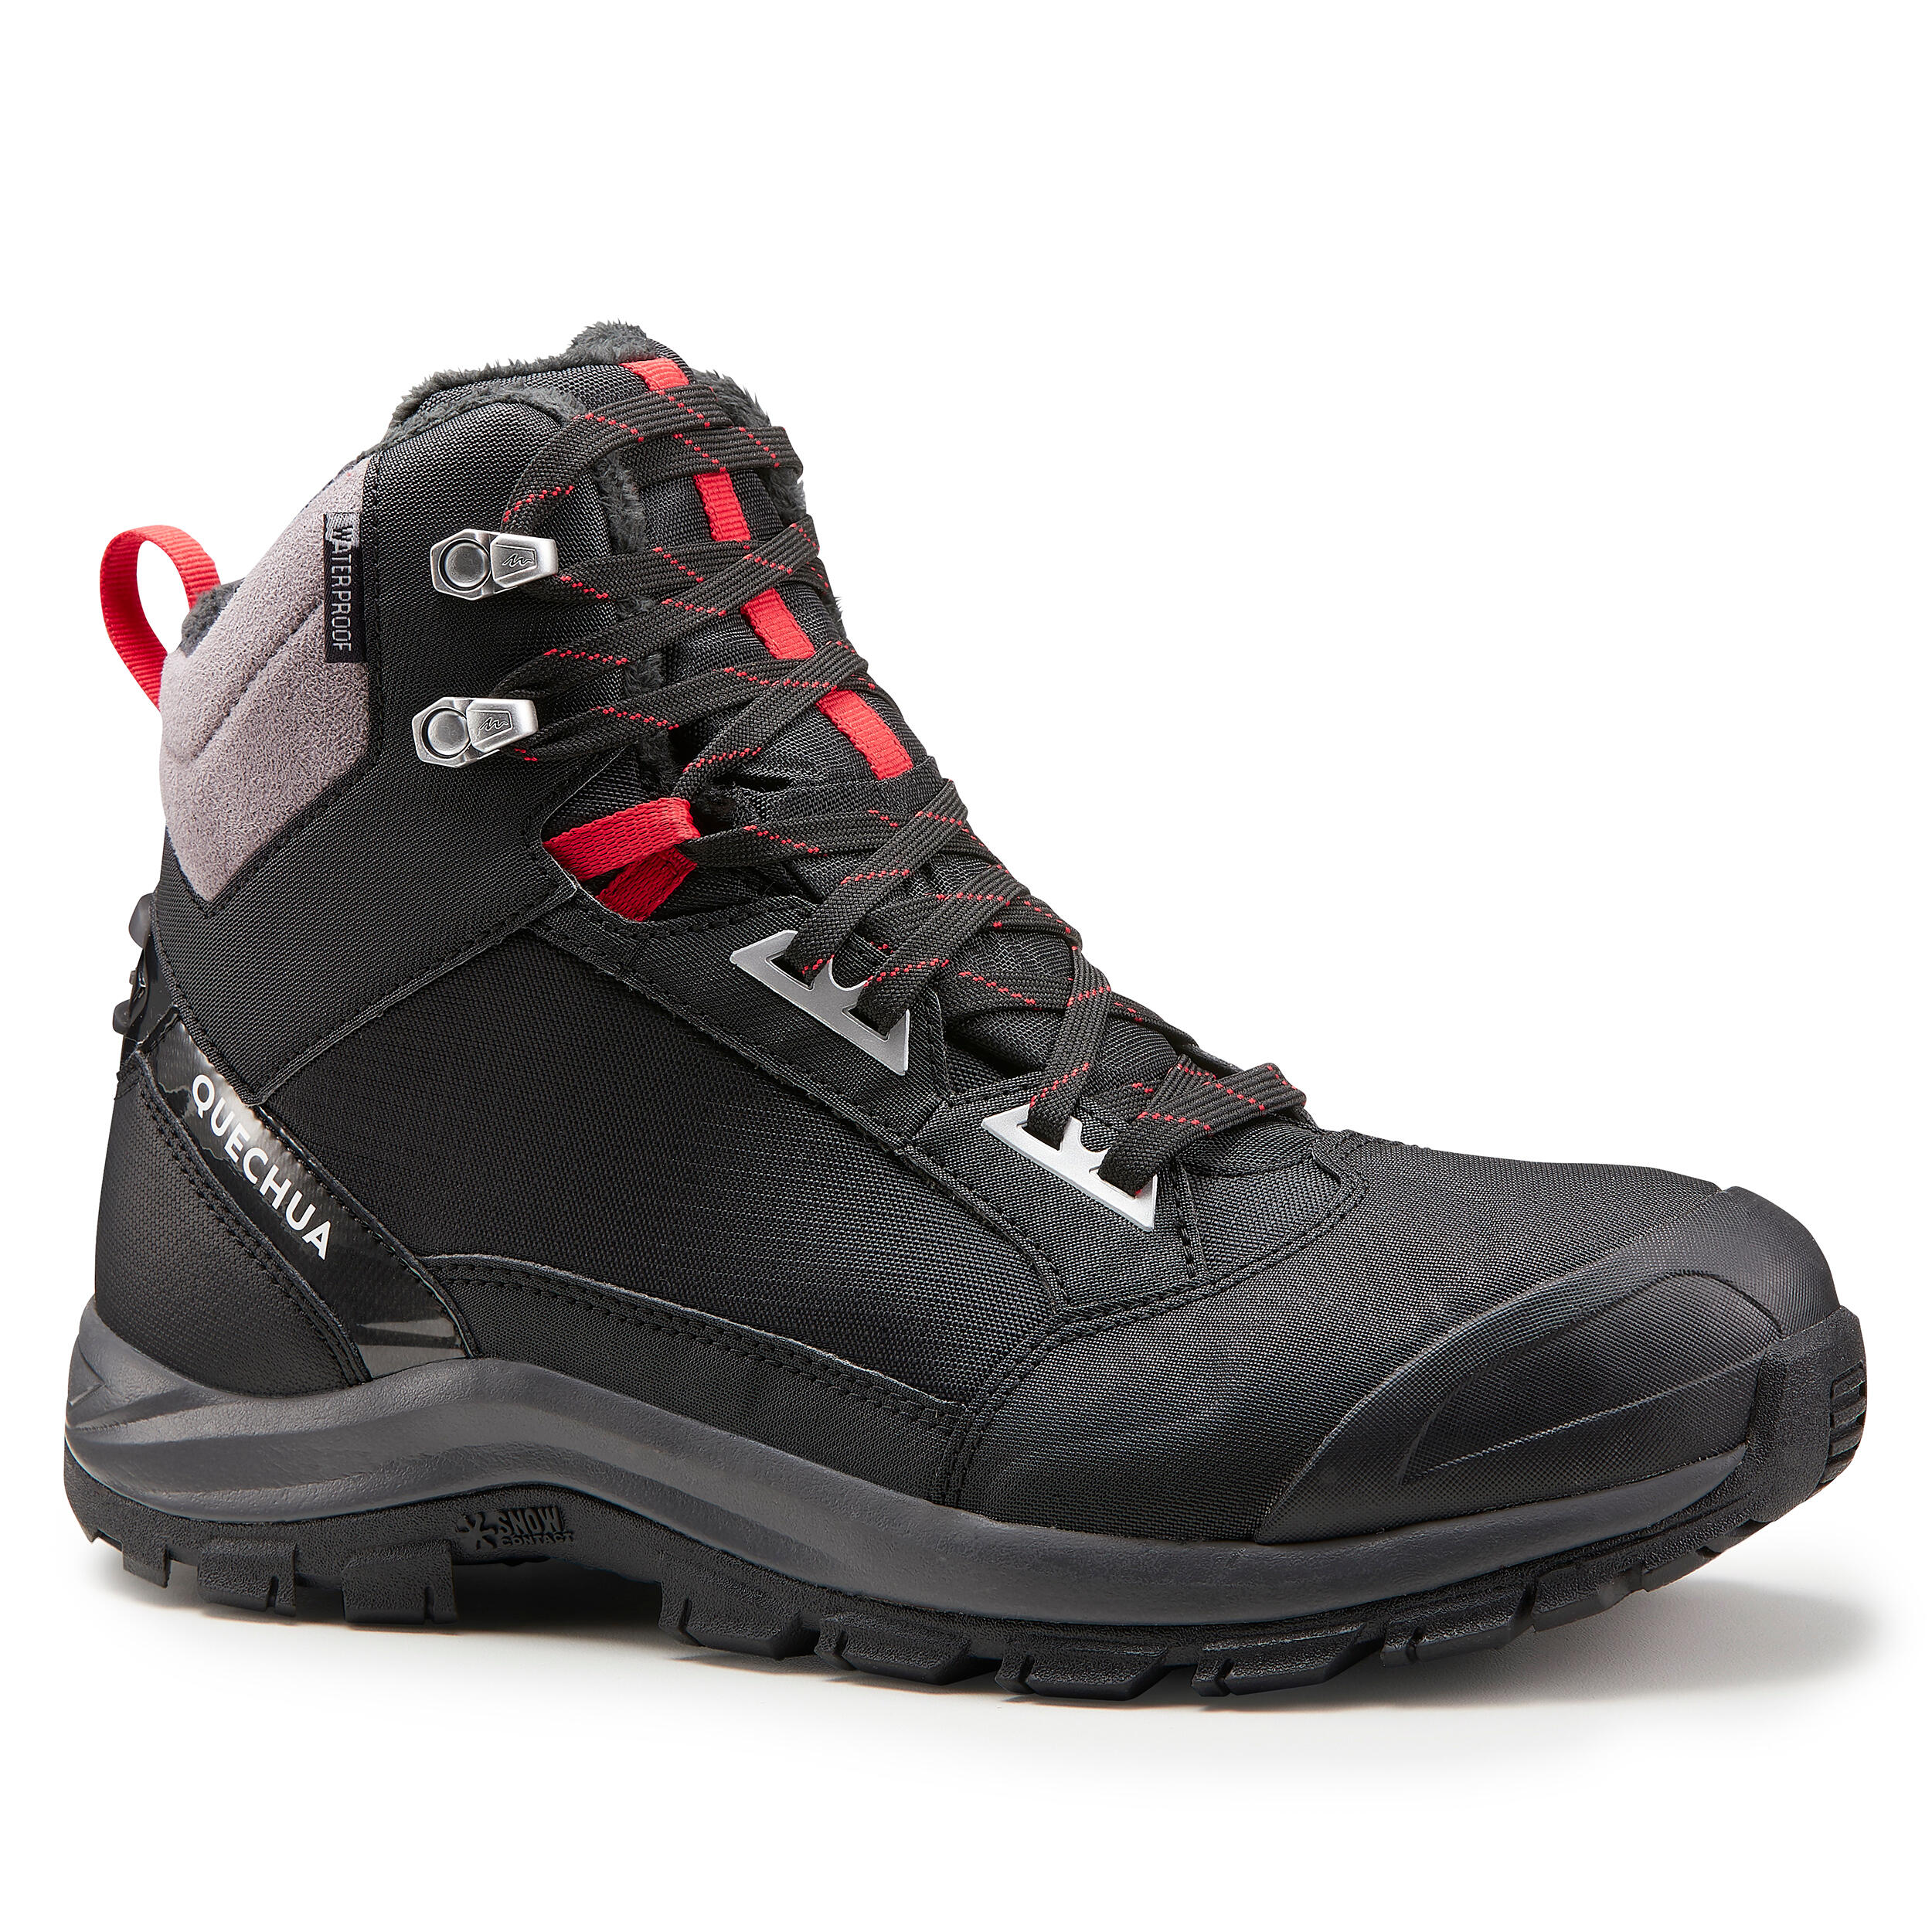 x-warm mid black snow hiking boots 